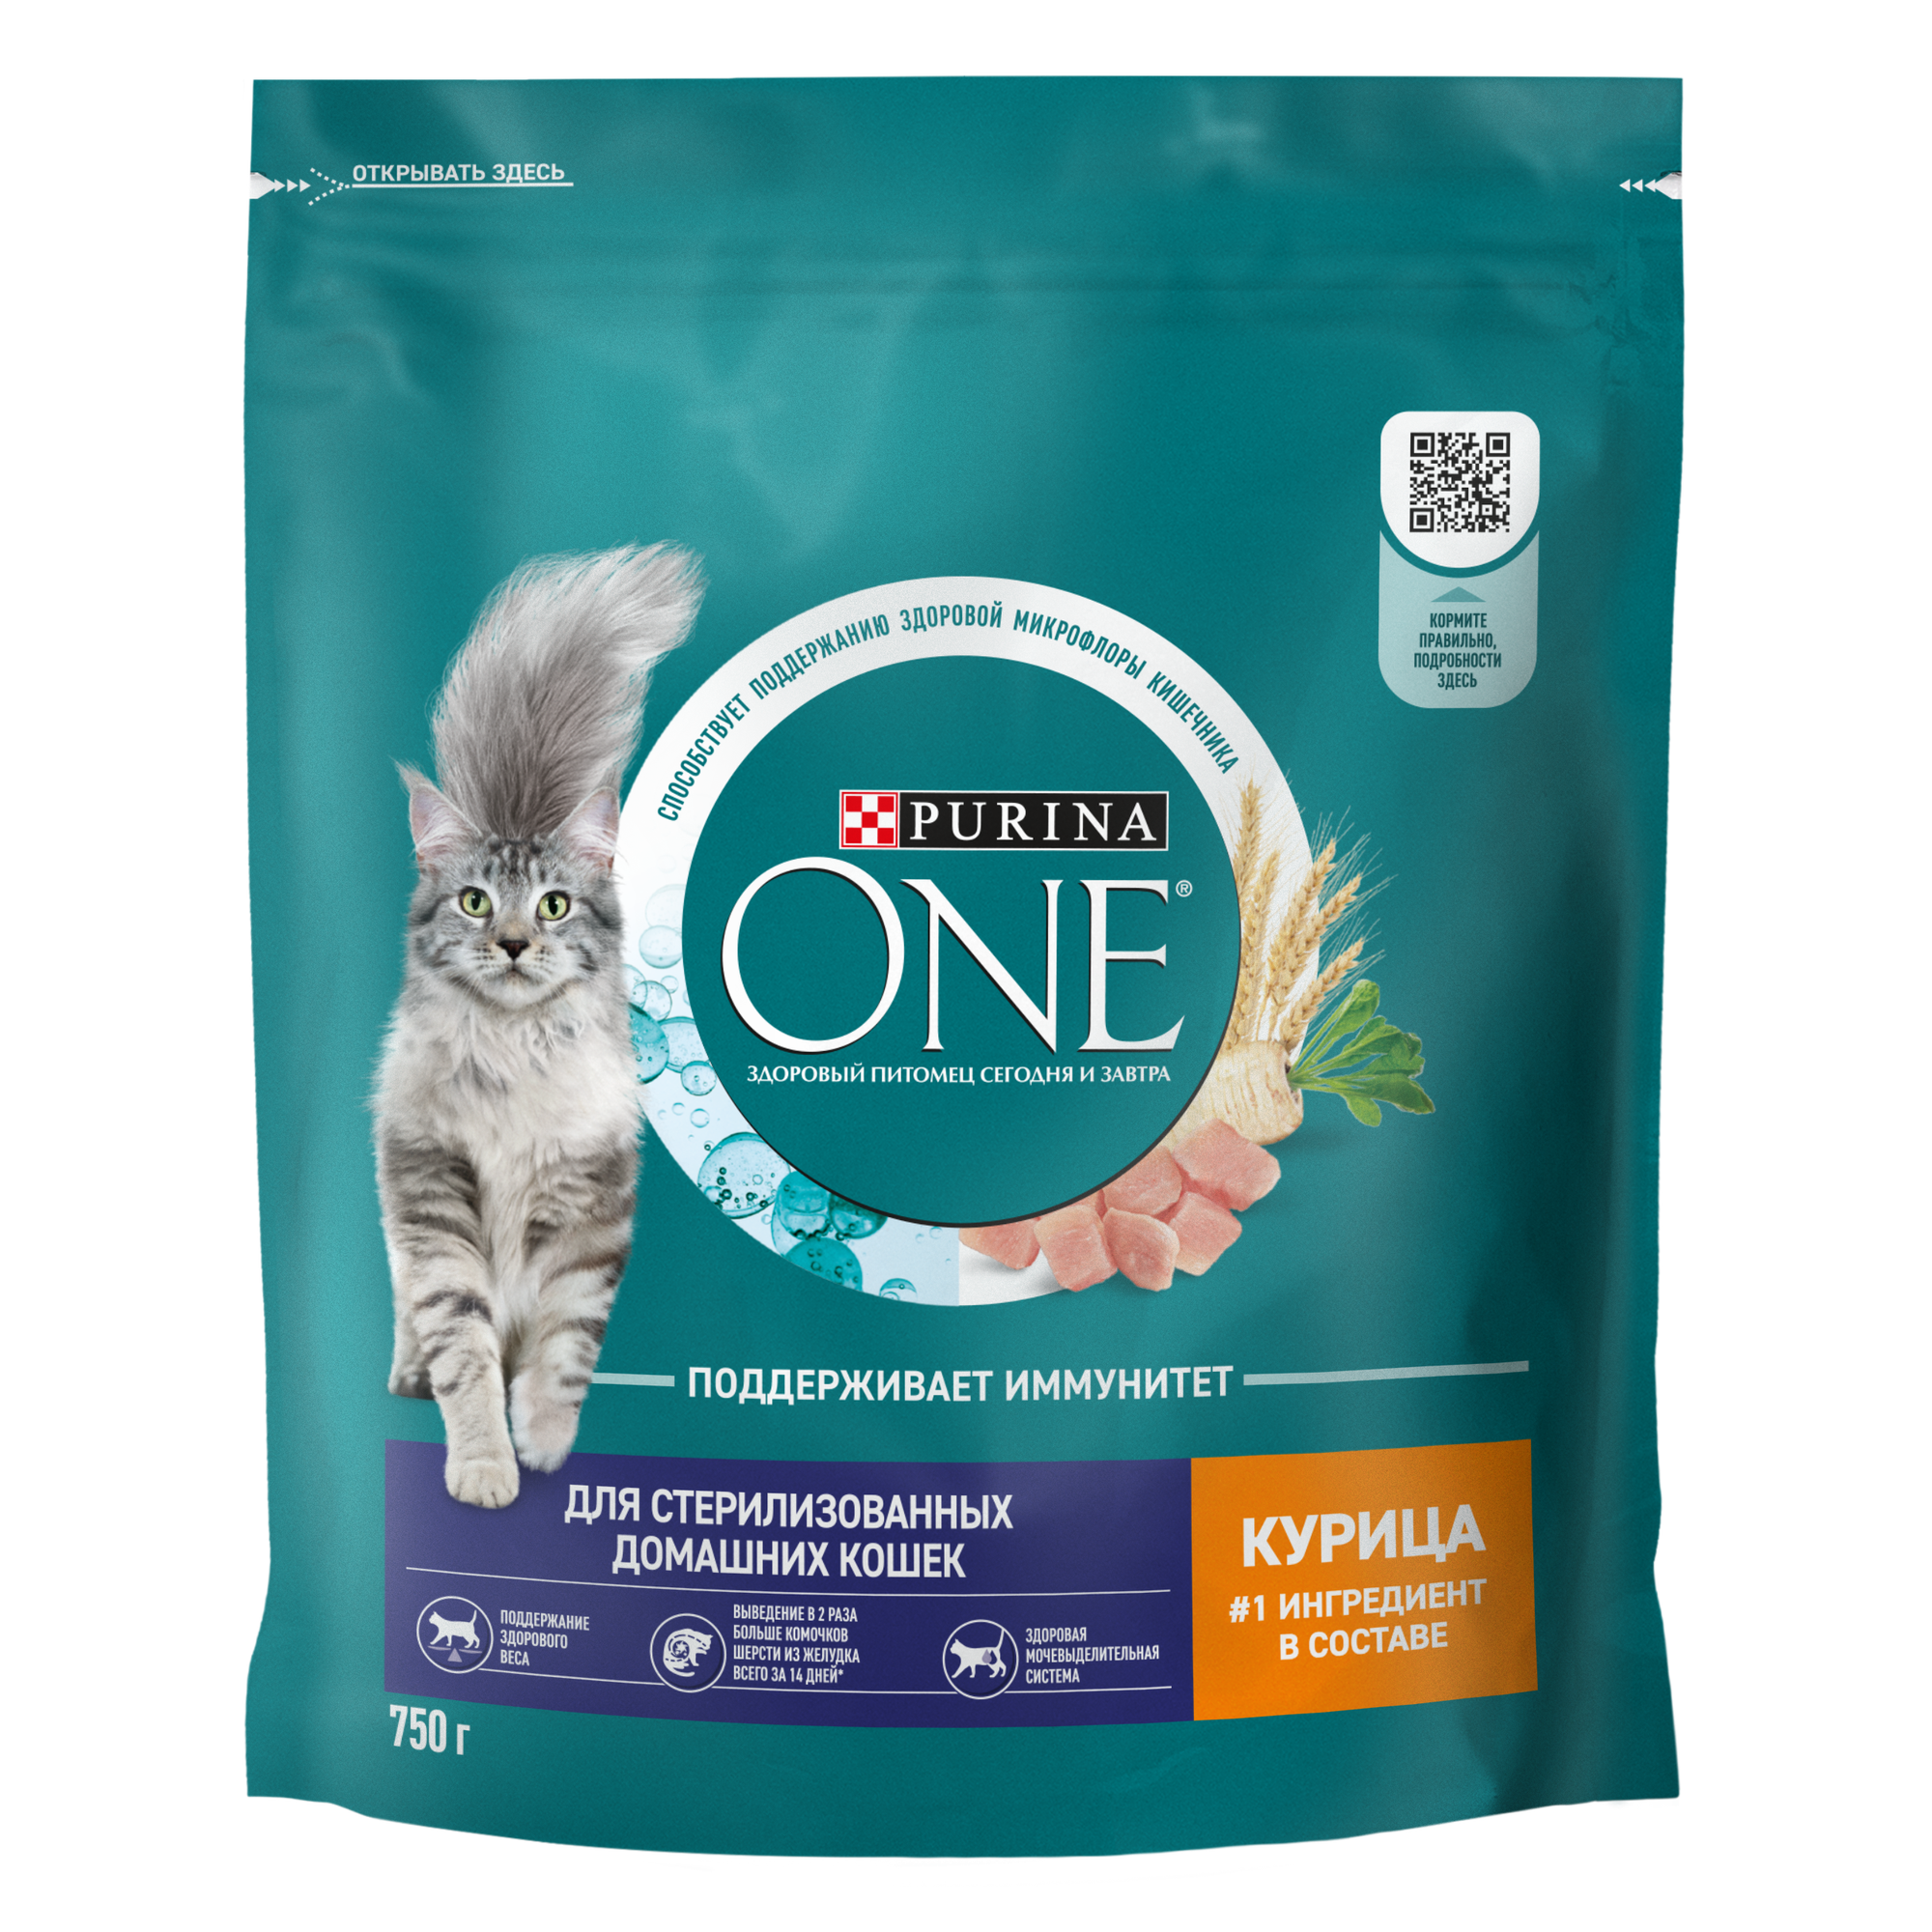 PURINA ONE 750 г сухой корм для стерилизованных кошек и кастрированных котов, живущих в домашних условиях, с высоким содержанием курицы и цельными злаками